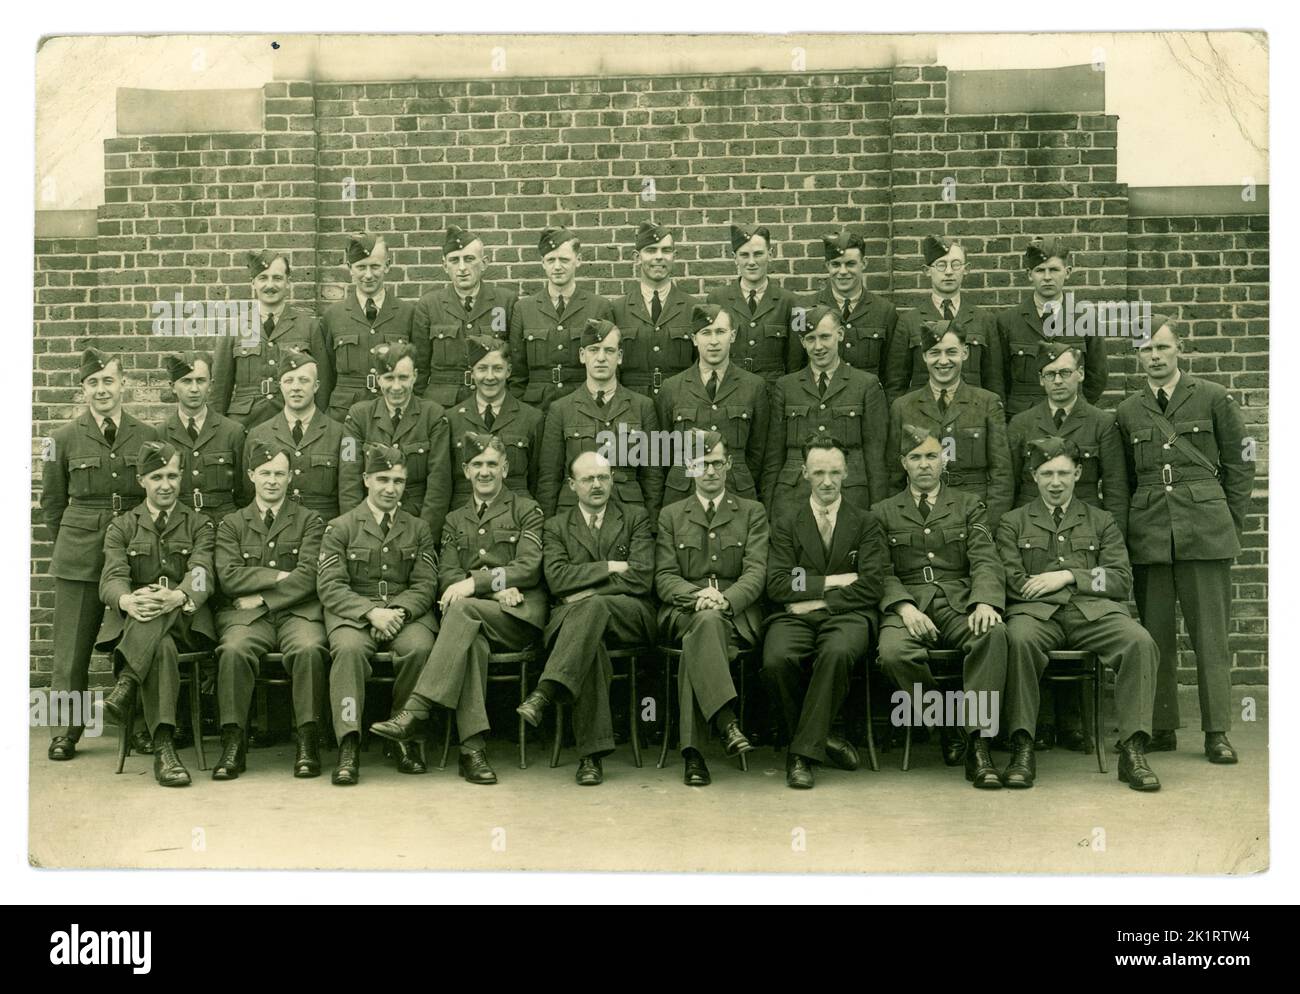 Original WW2 Era Royal Air Force personnel (RAF) aviateurs portant l'uniforme de tunique et les casquettes latérales. À l'école de formation aérienne. Il y a des examinateurs ou du personnel non militaire, des stylos dans les poches assis avec eux. Vers 1943, lieu inconnu, Royaume-Uni Banque D'Images